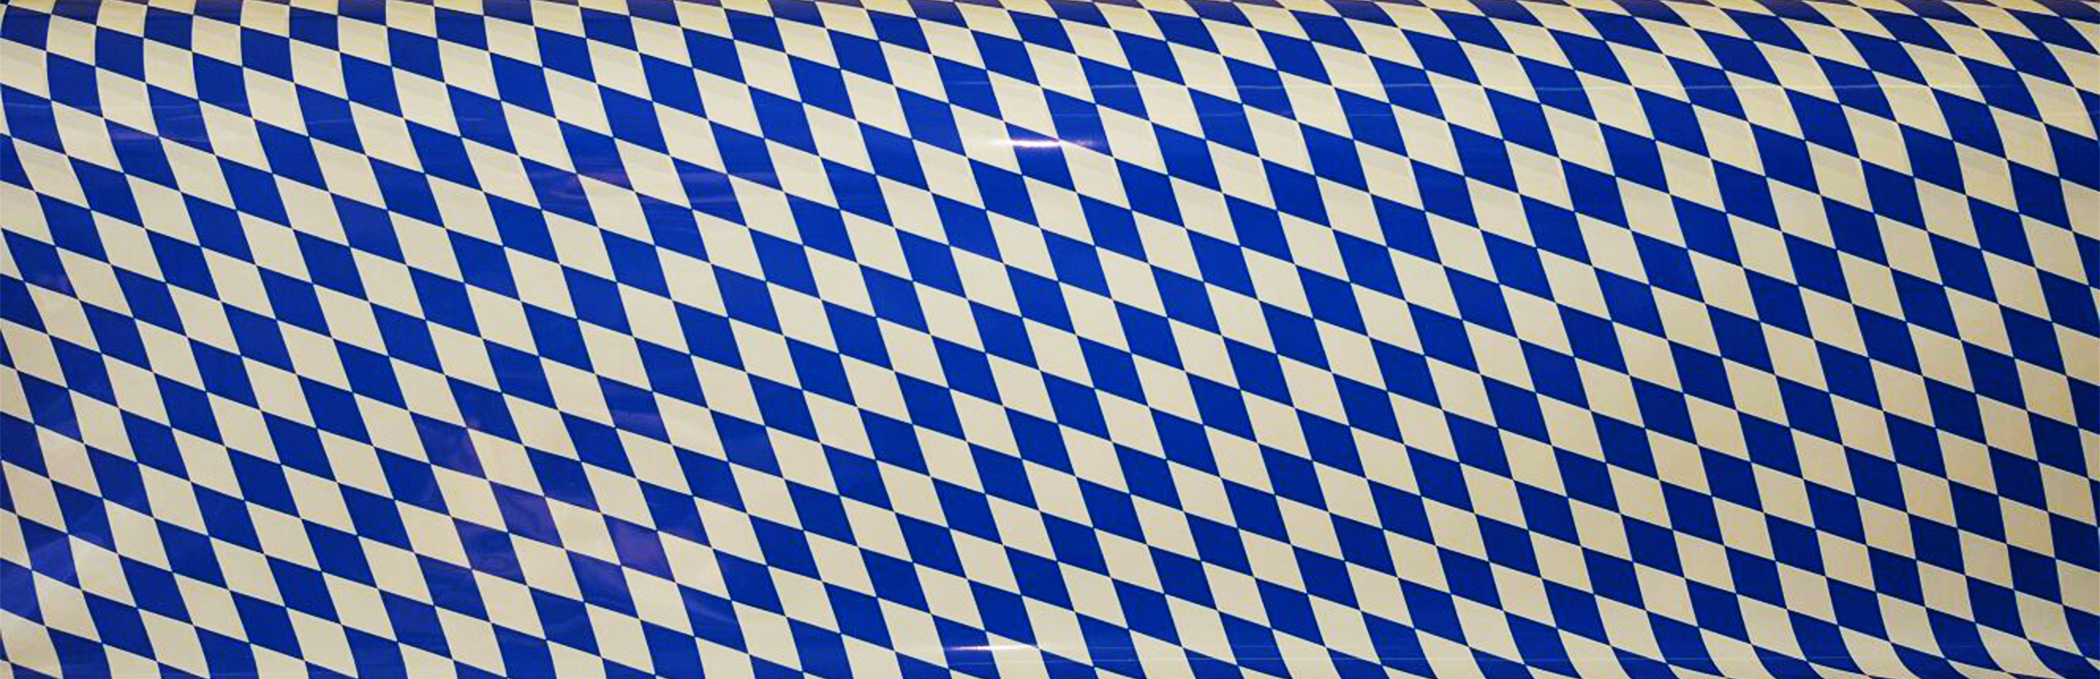 Folientischdecke "Bayrische Raute", blau-weiß, 100m Rolle, 100cm breit